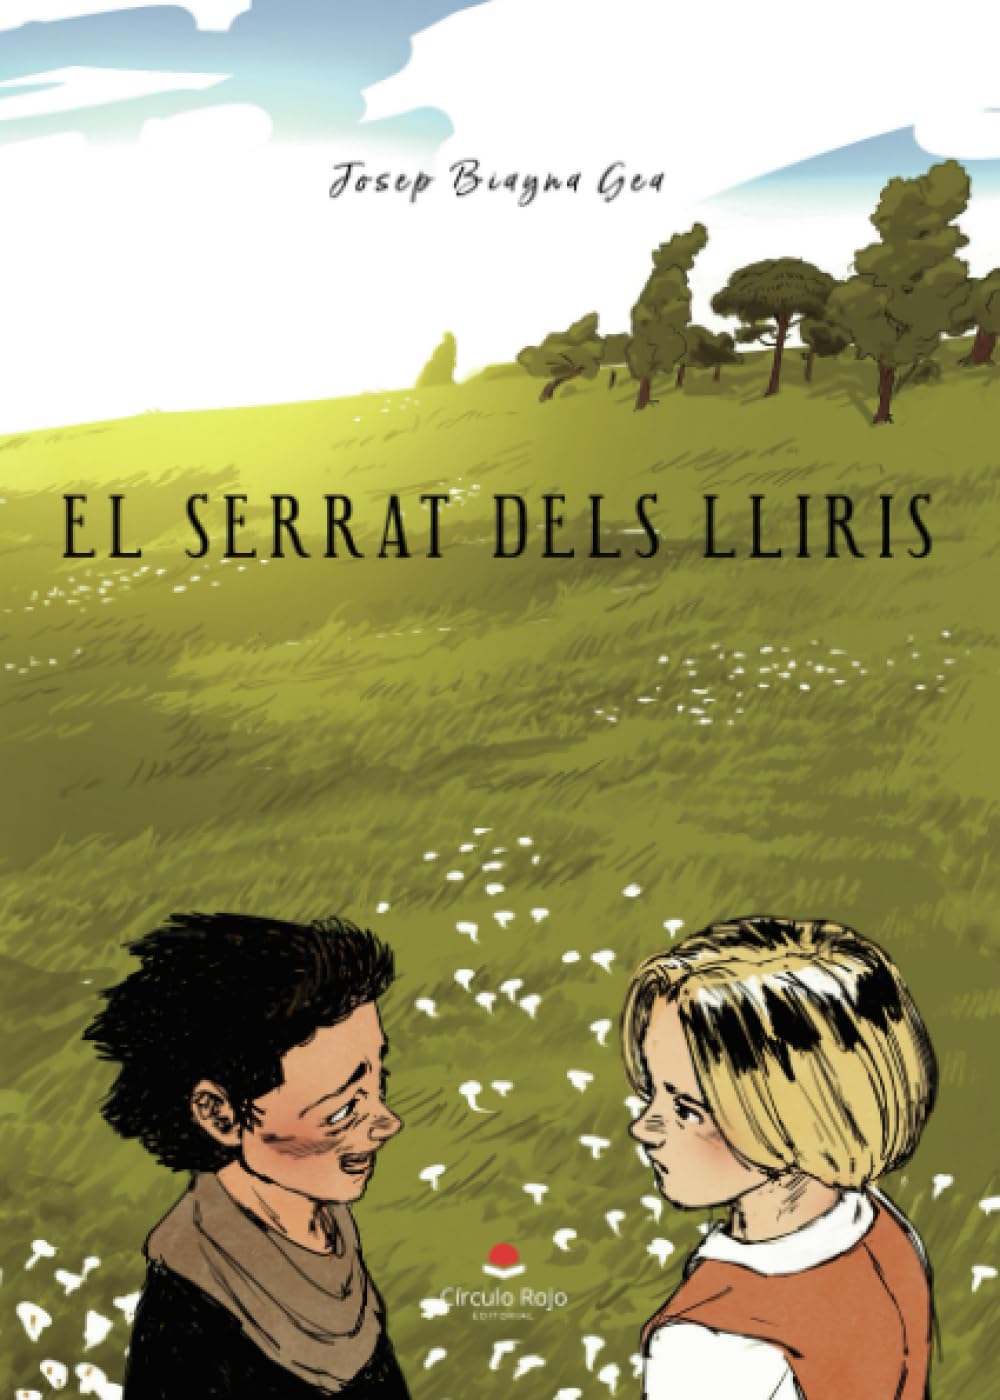 Hablamos con Josep Biayna, autor de “EL SERRAT DELS LLIRIS”, que ha publicado con Círculo Rojo.